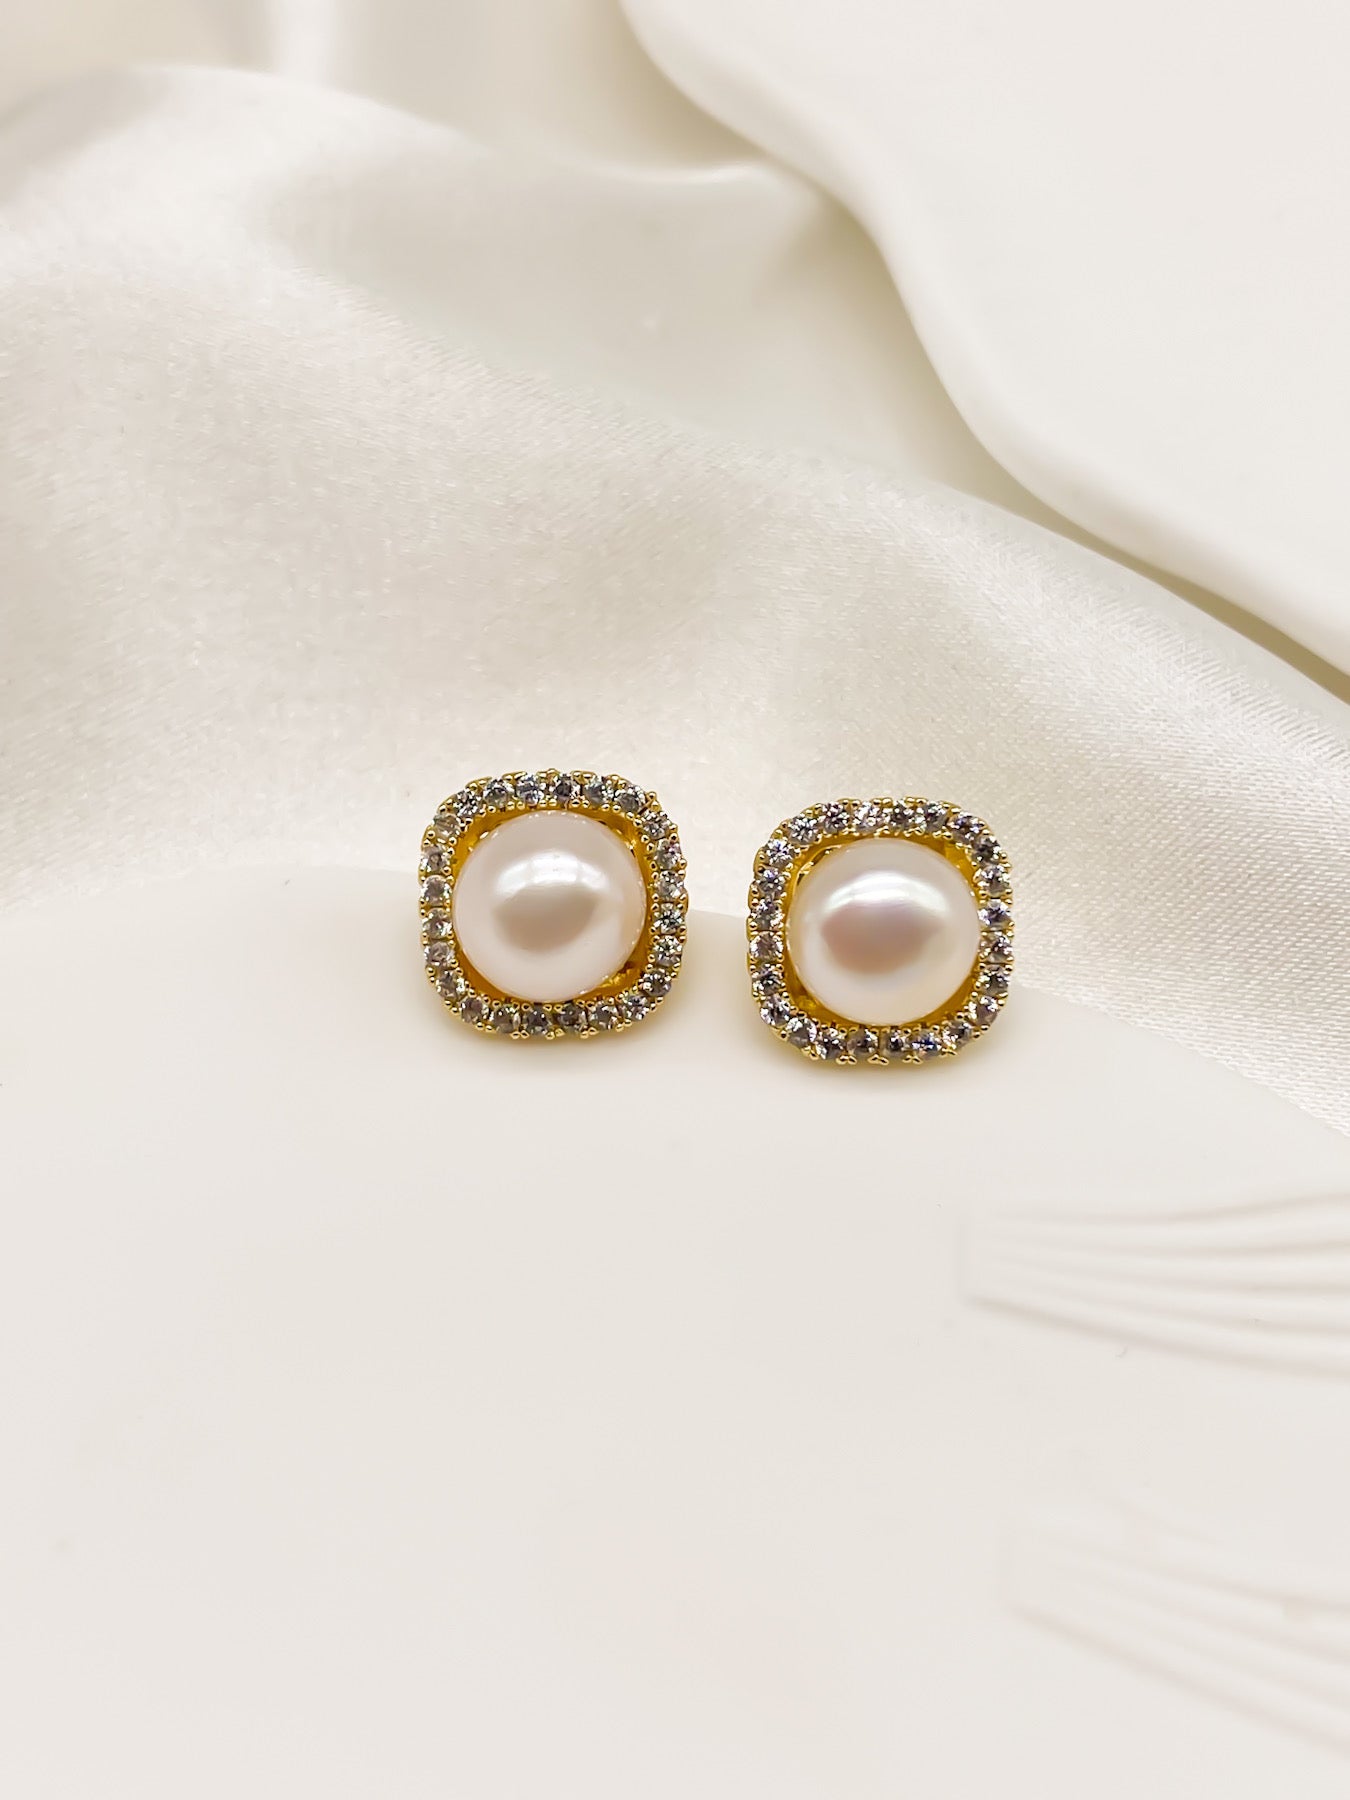 Buy Gold Chunky Pearl Stud Earrings, Big Pearl Studs, Wedding Earrings,  Vintage Style Earrings, Clip on Pearl Earrings, No Piercing Online in India  - Etsy